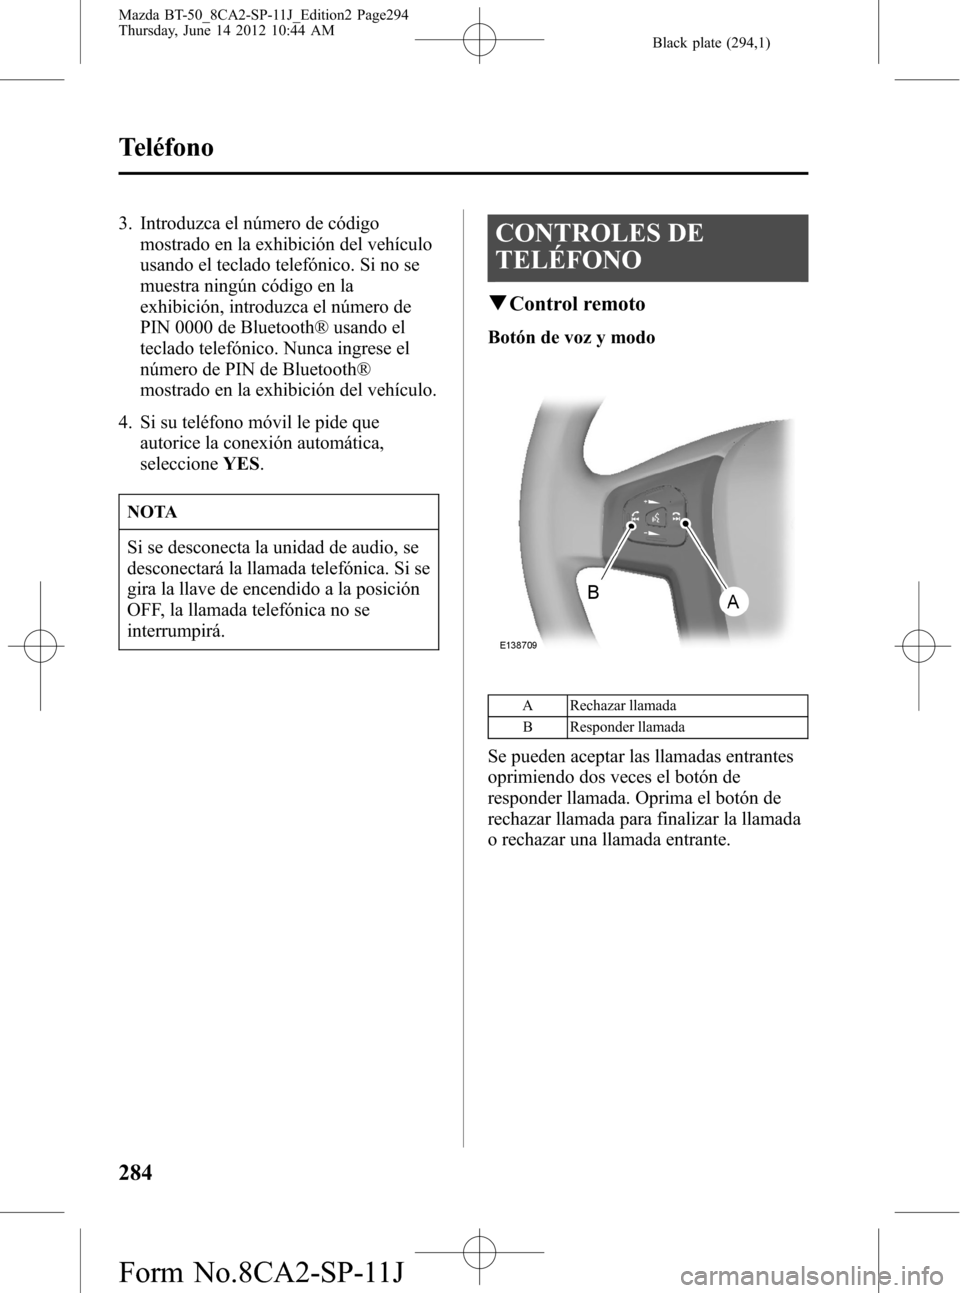 MAZDA MODEL BT-50 2014  Manual del propietario (in Spanish) Black plate (294,1)
3. Introduzca el número de código
mostrado en la exhibición del vehículo
usando el teclado telefónico. Si no se
muestra ningún código en la
exhibición, introduzca el númer